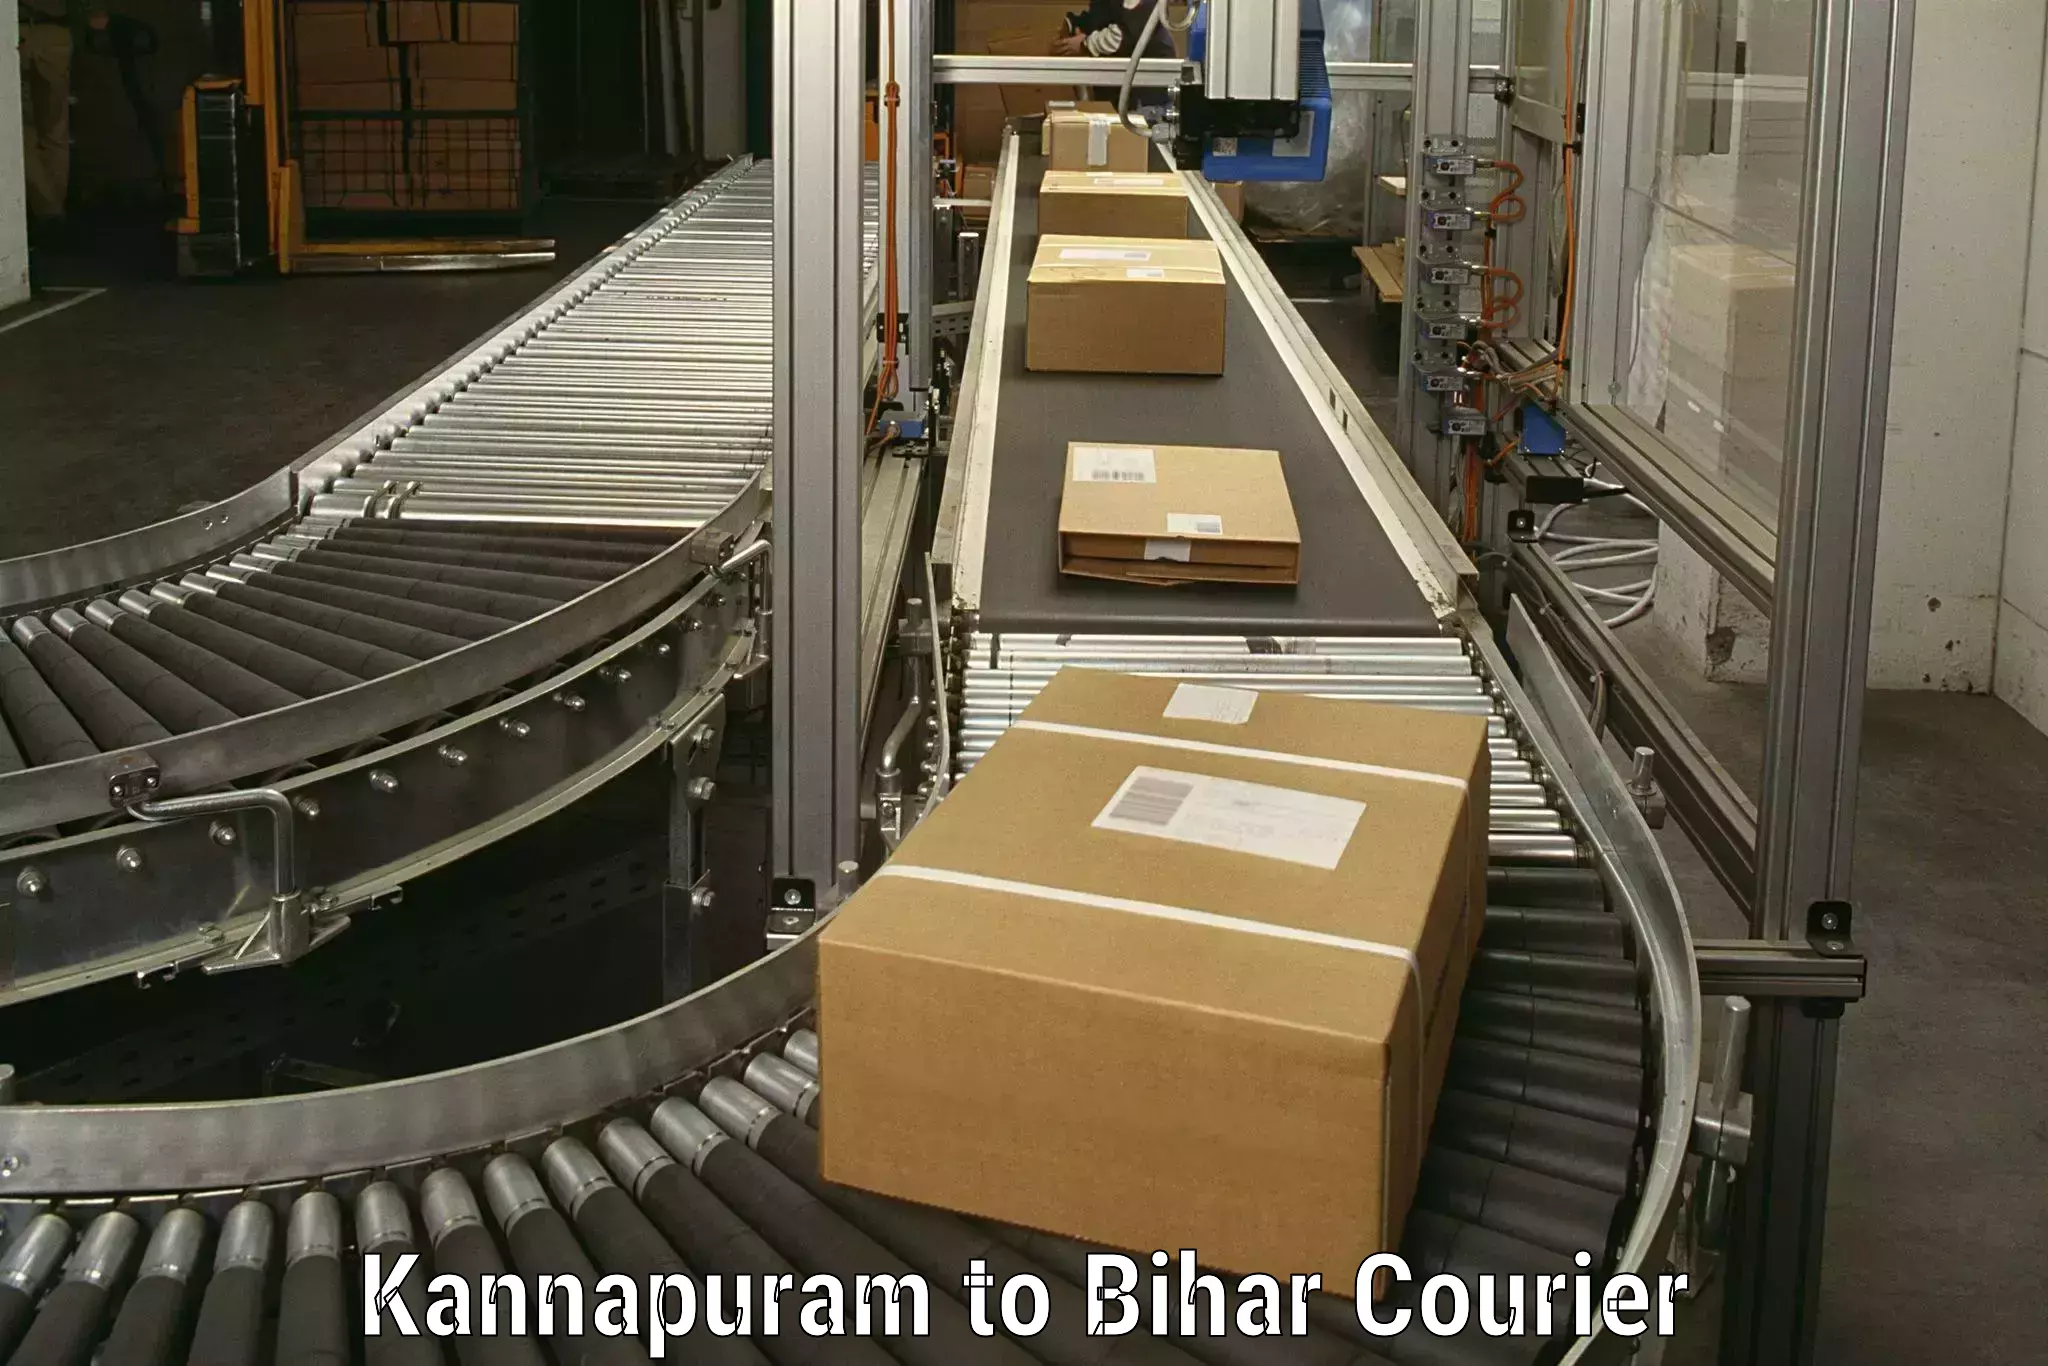 Trusted moving company Kannapuram to Pakribarawan